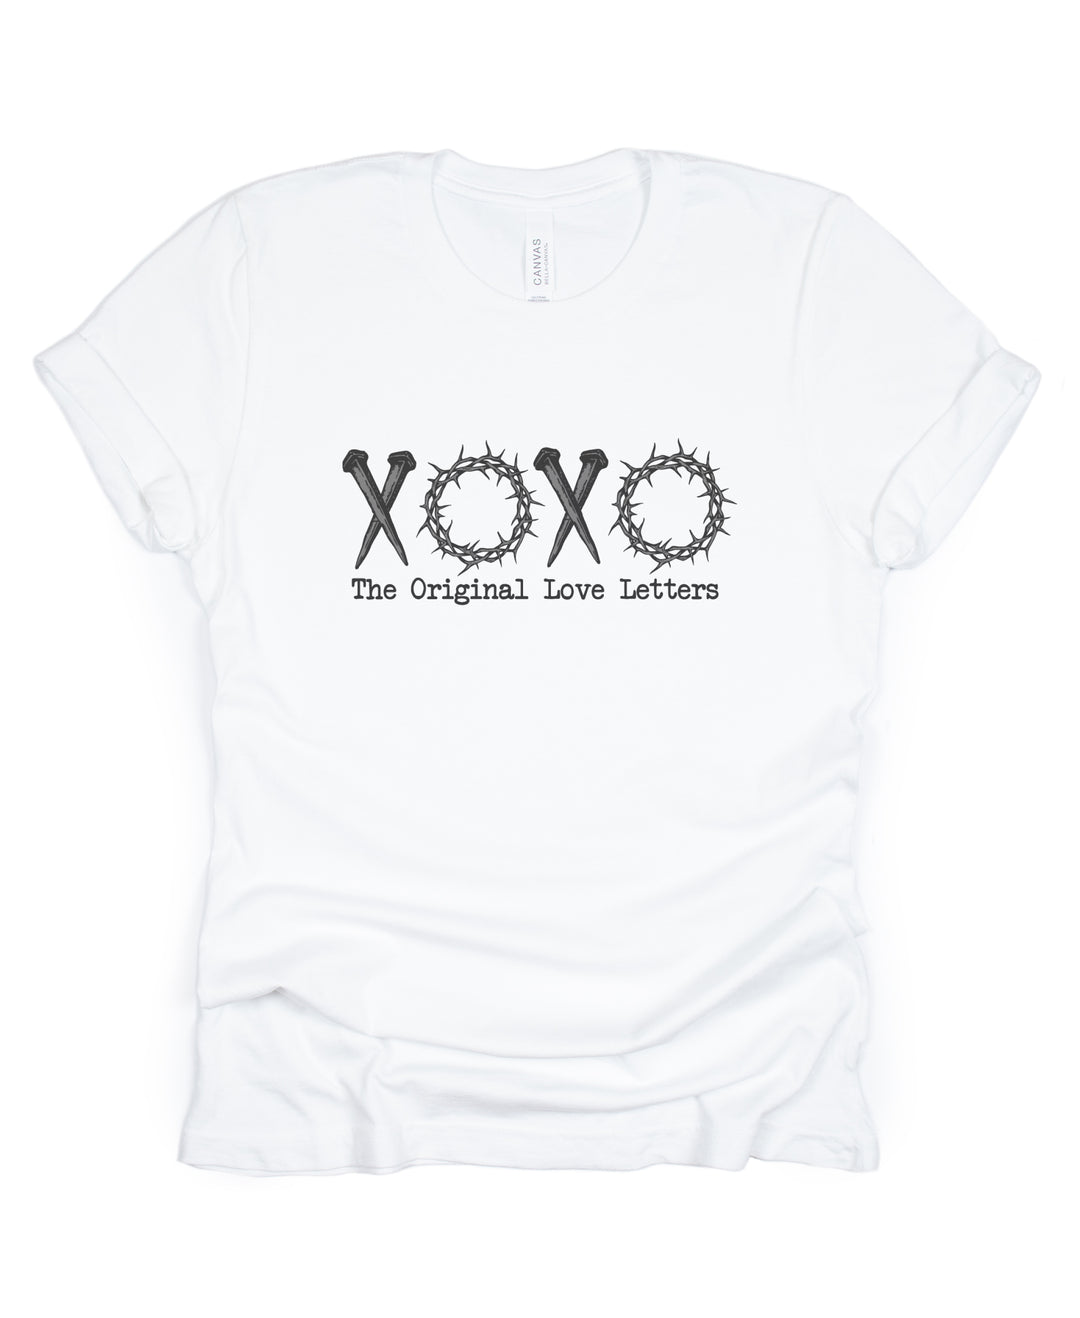 XOXO The Original Love Letters - Unisex Crew-Neck Tee